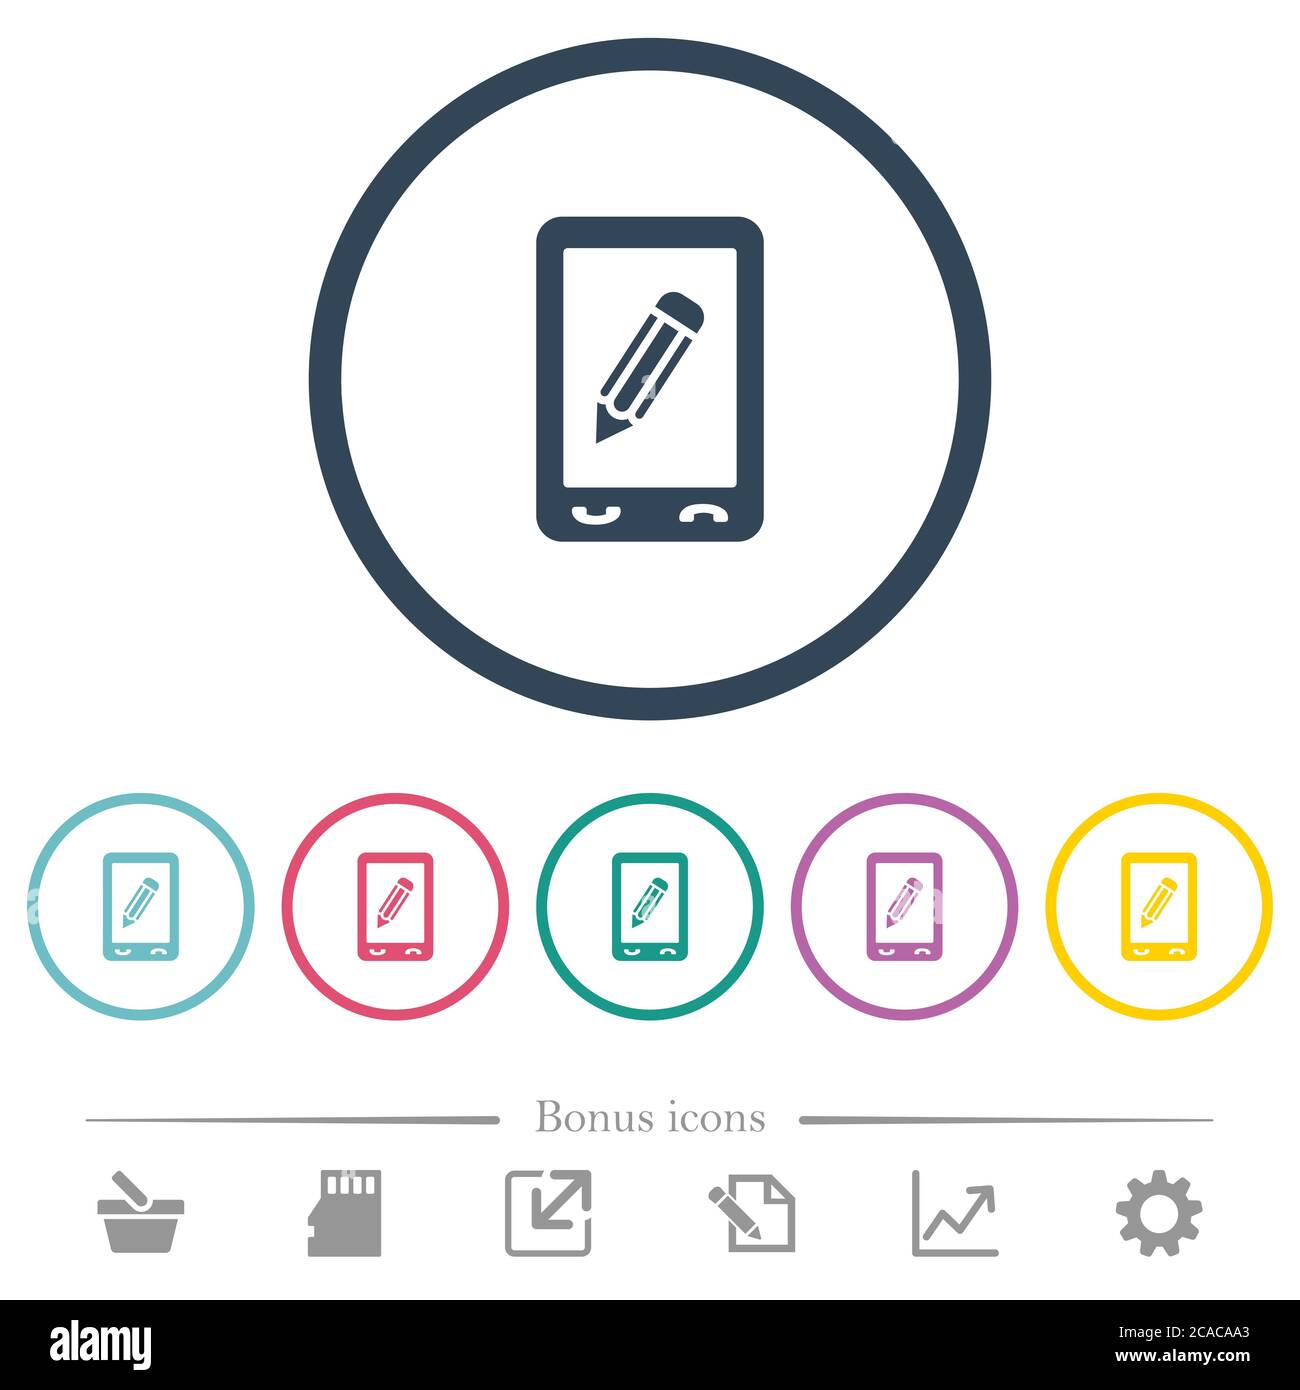 Icone piatte a colori per memo mobili con contorni arrotondati. 6 icone bonus incluse. Illustrazione Vettoriale